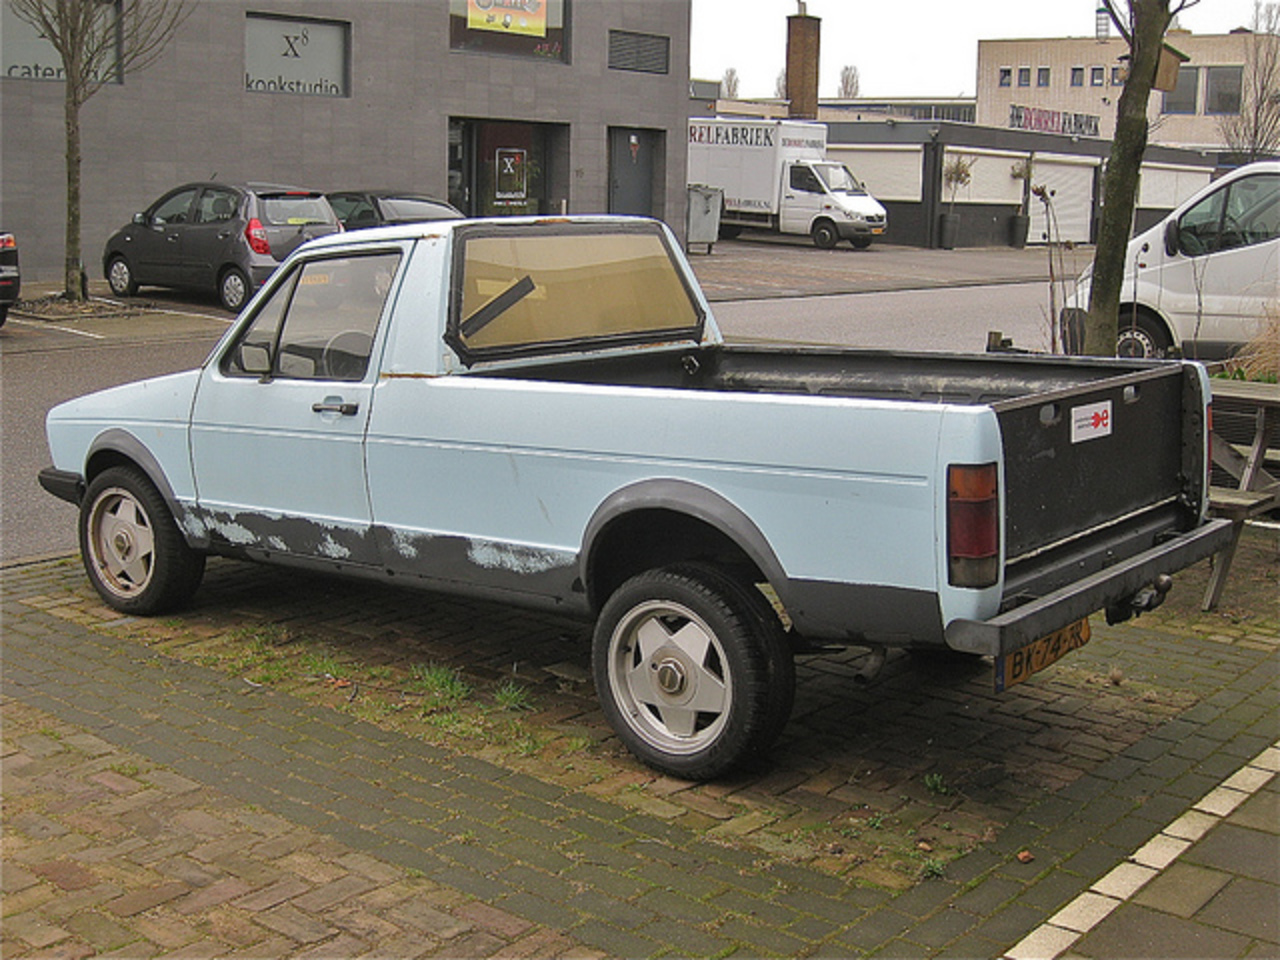 VOLKSWAGEN Caddy Diesel Pick-up, 1985 | Flickr - Photo Sharing!